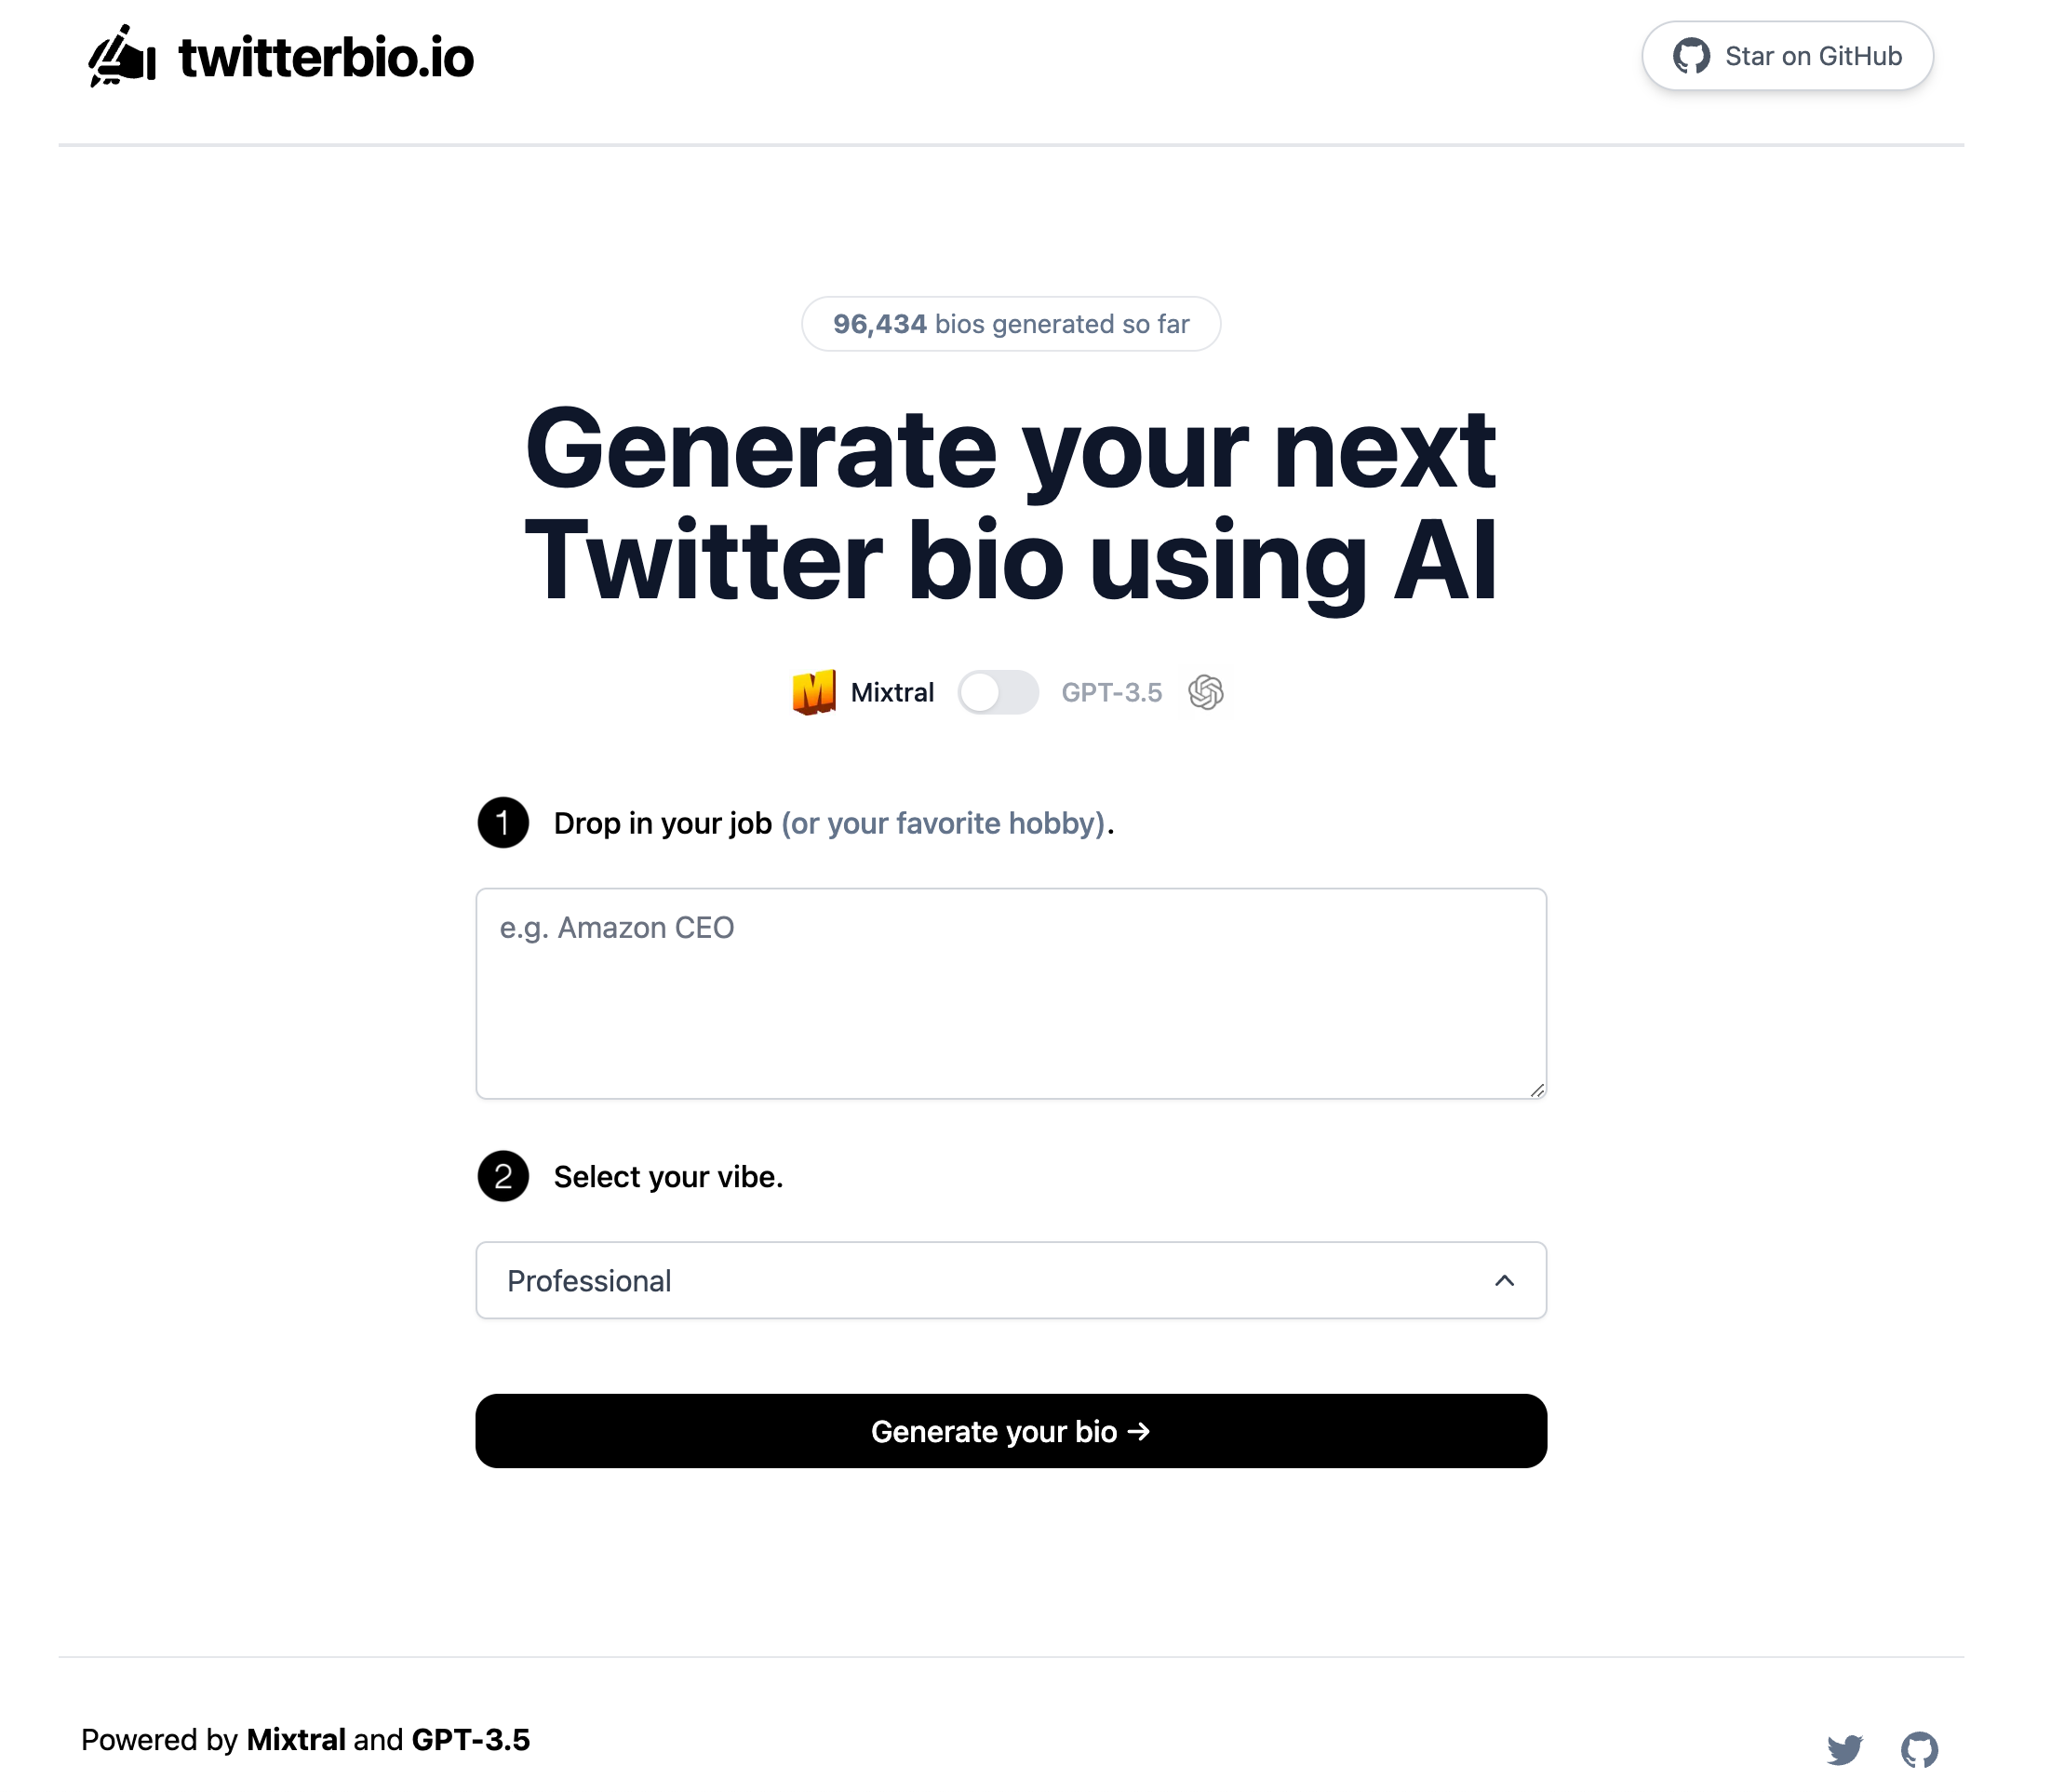 Twitter Bio Generator